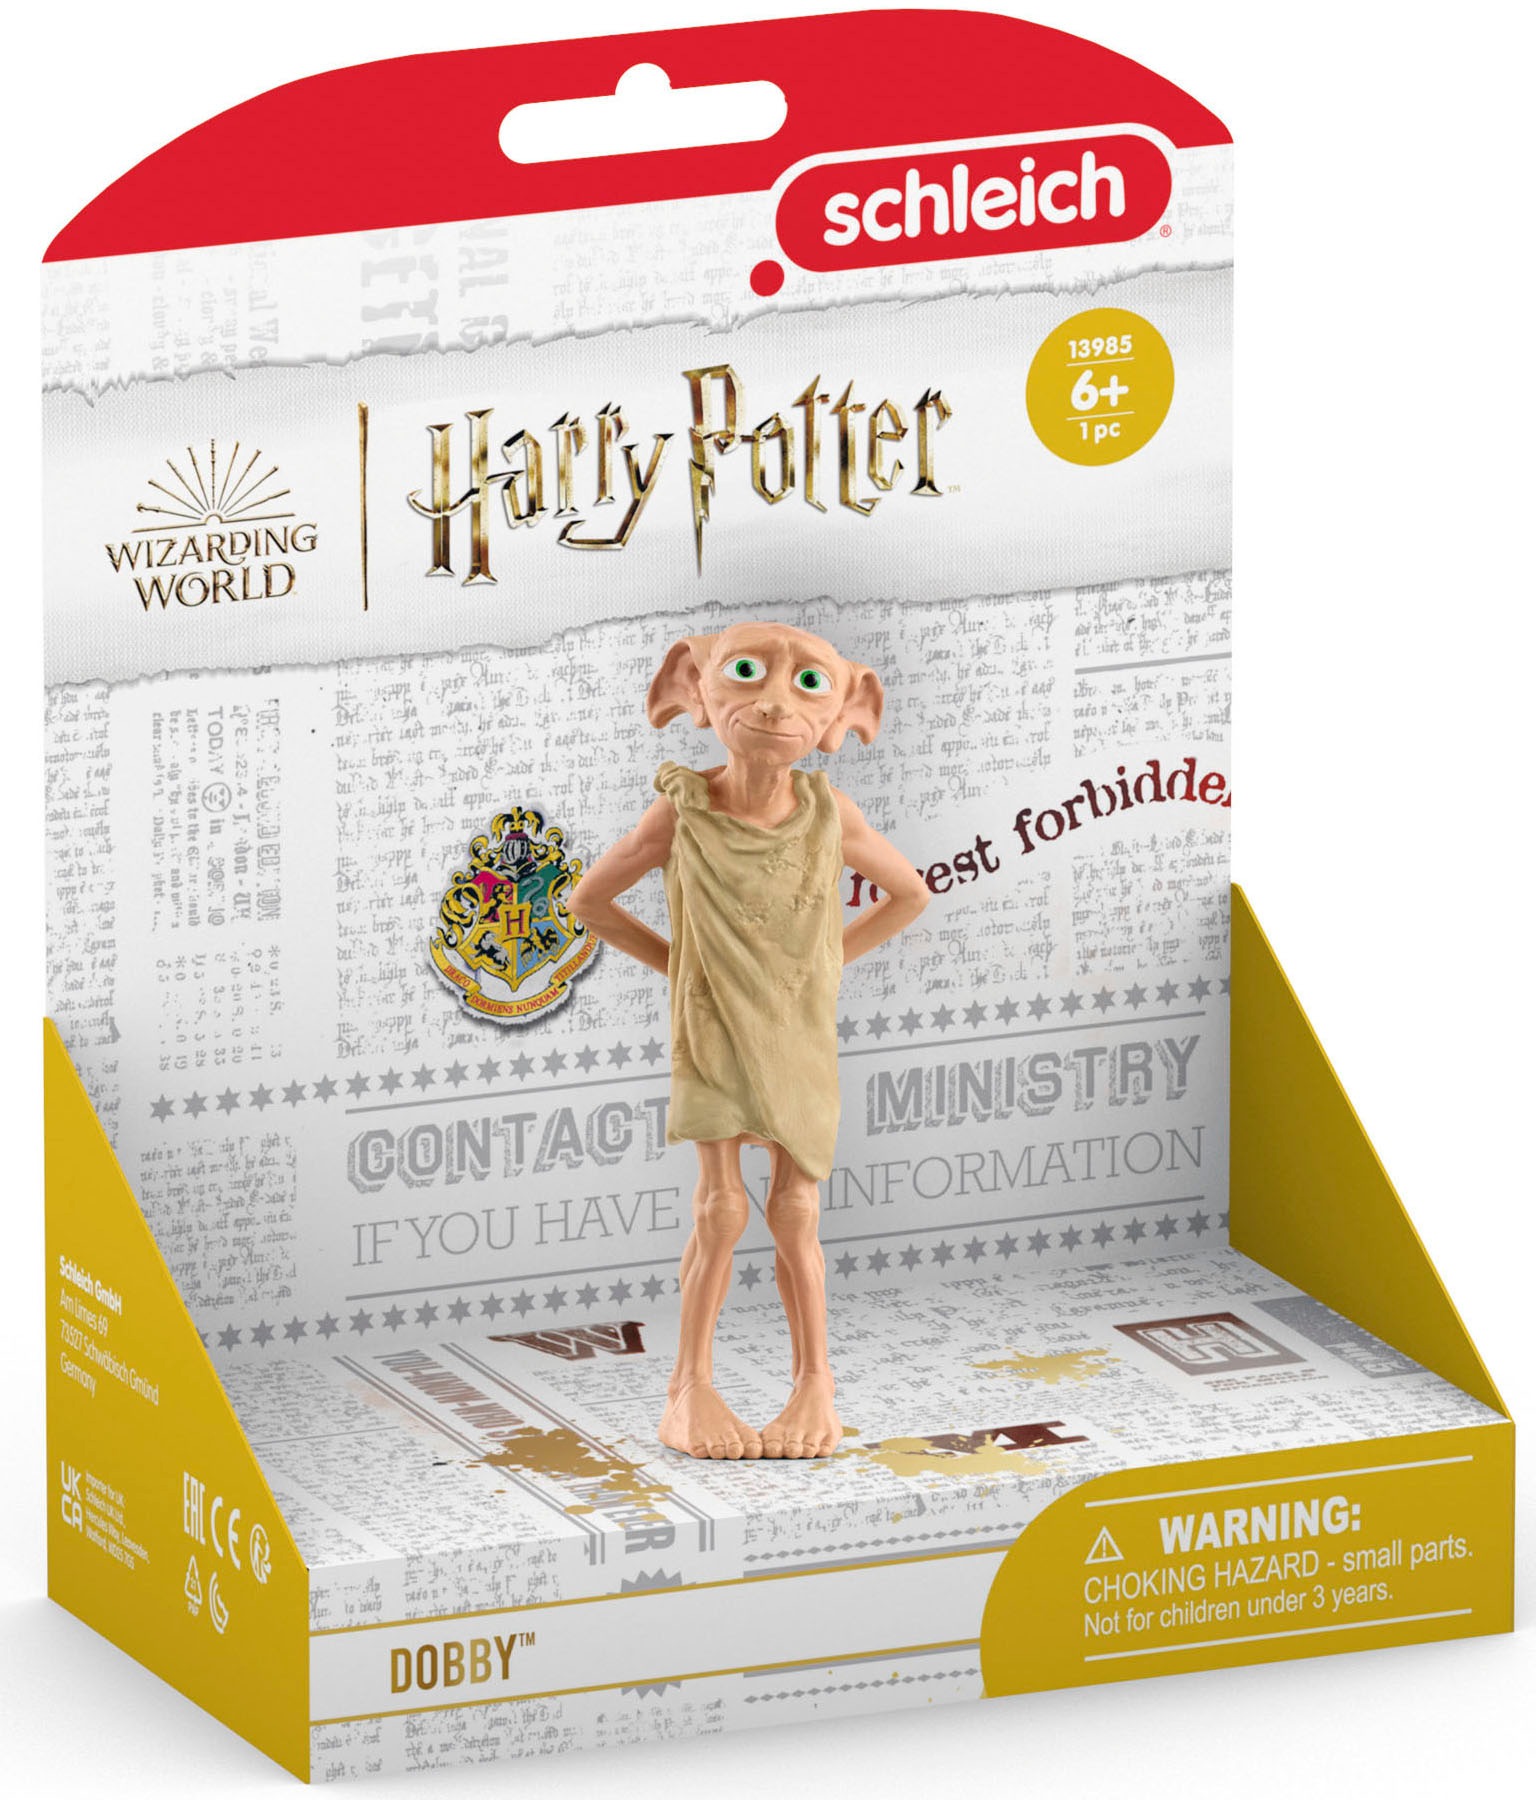 Schleich® Spielfigur »WIZARDING WORLD, Harry Potter™, Dobby™ (13985)«, Made in Europe